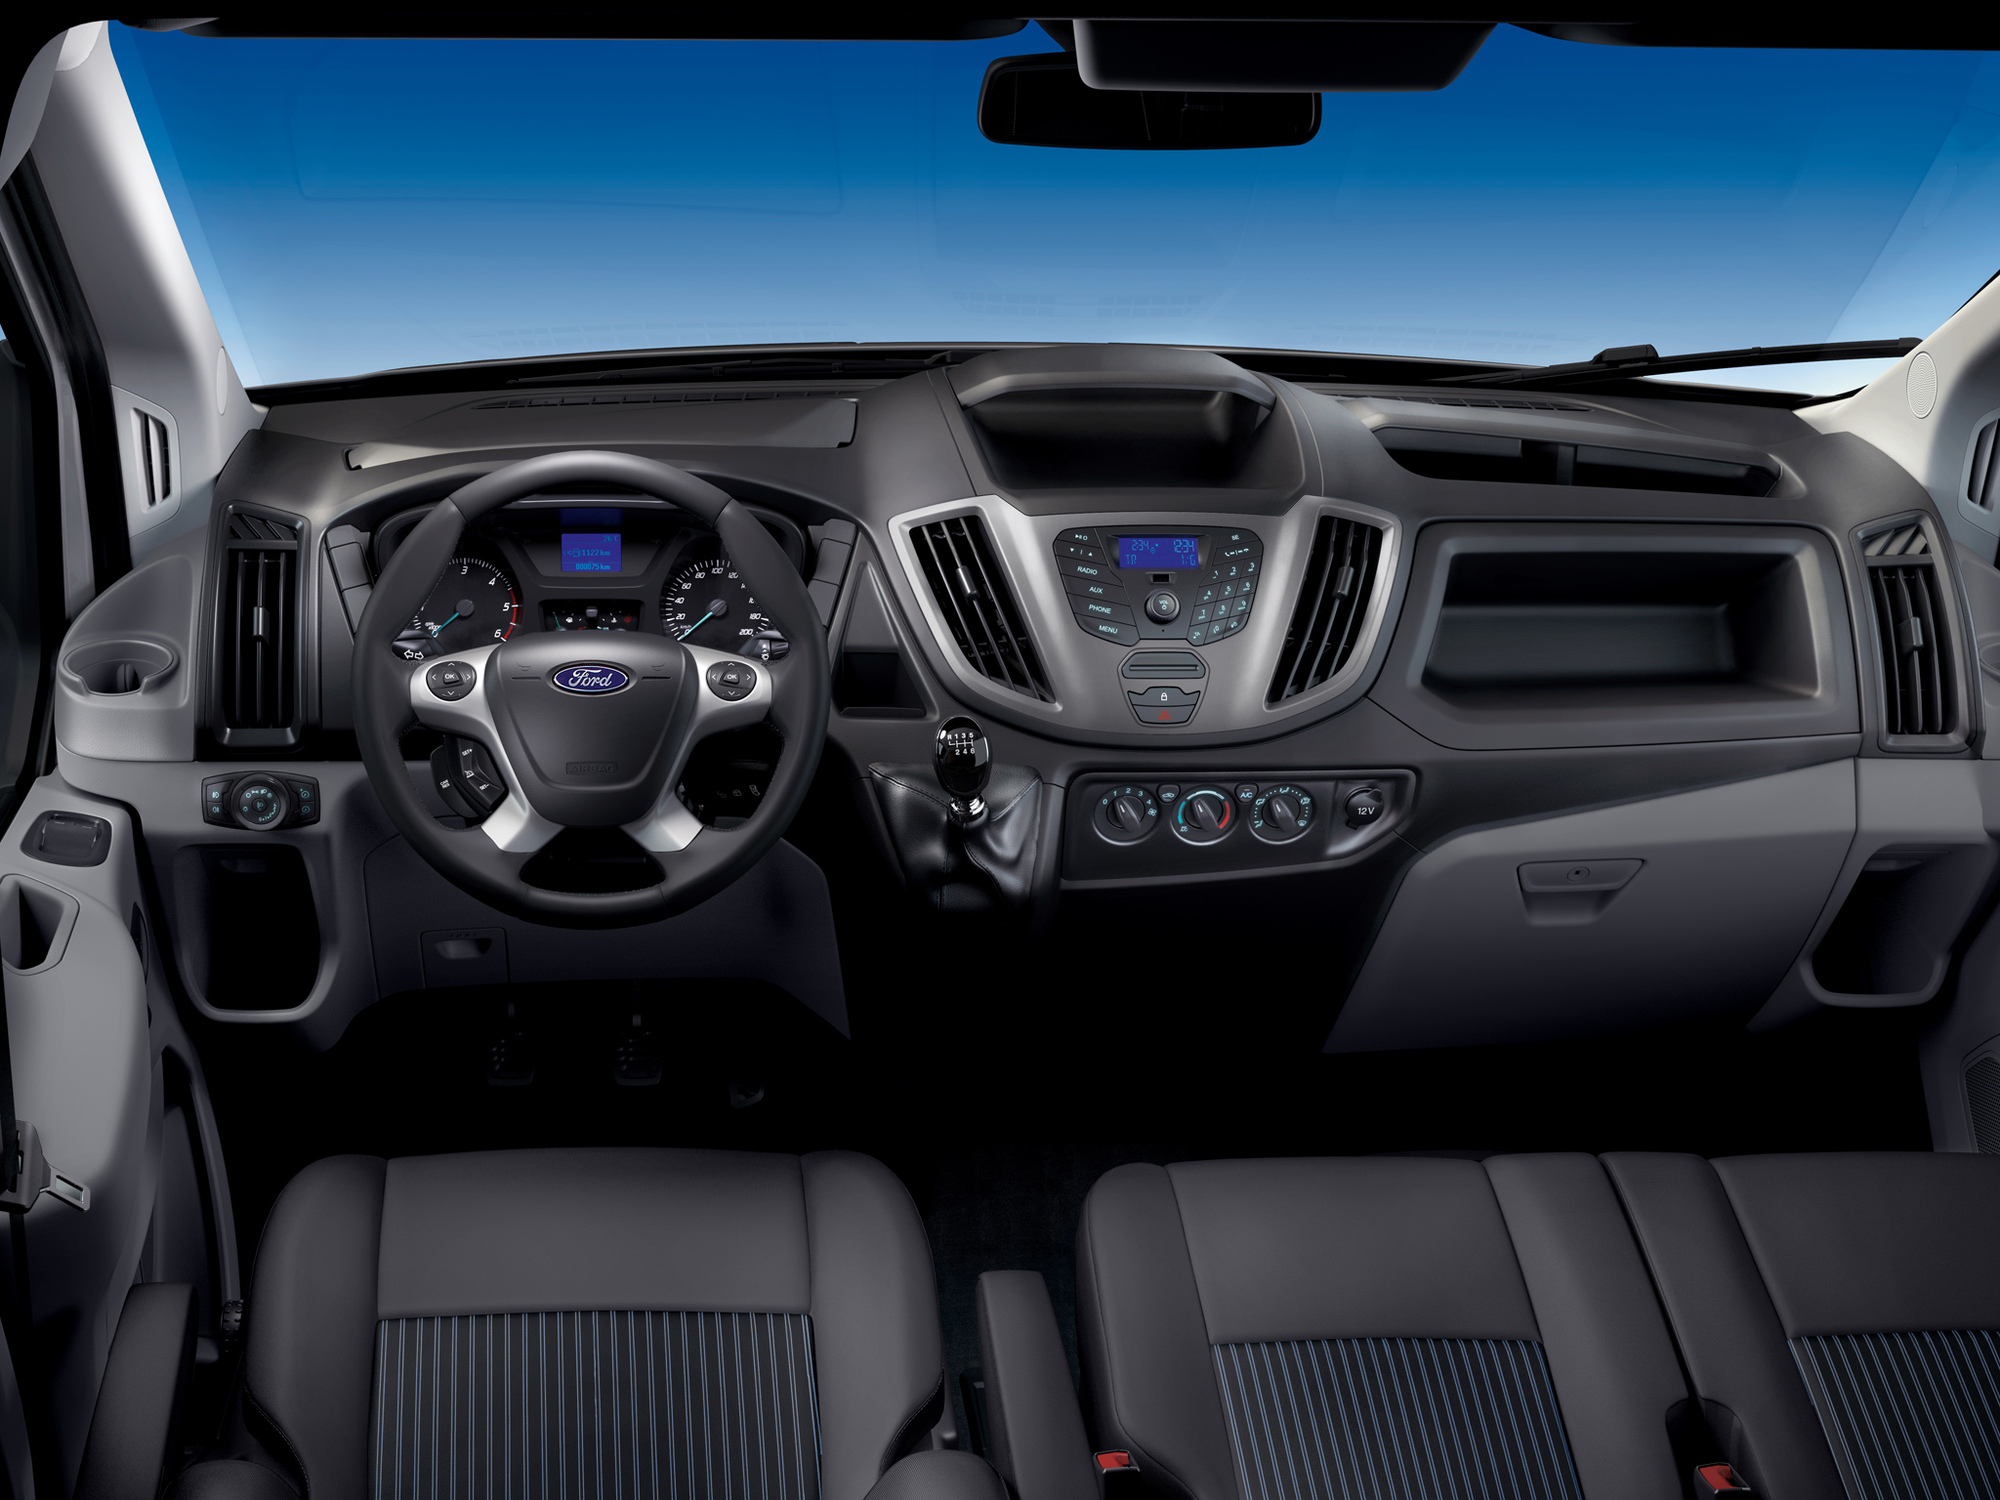 Купить новый Ford Mondeo 2017 года (5 поколение) по ...